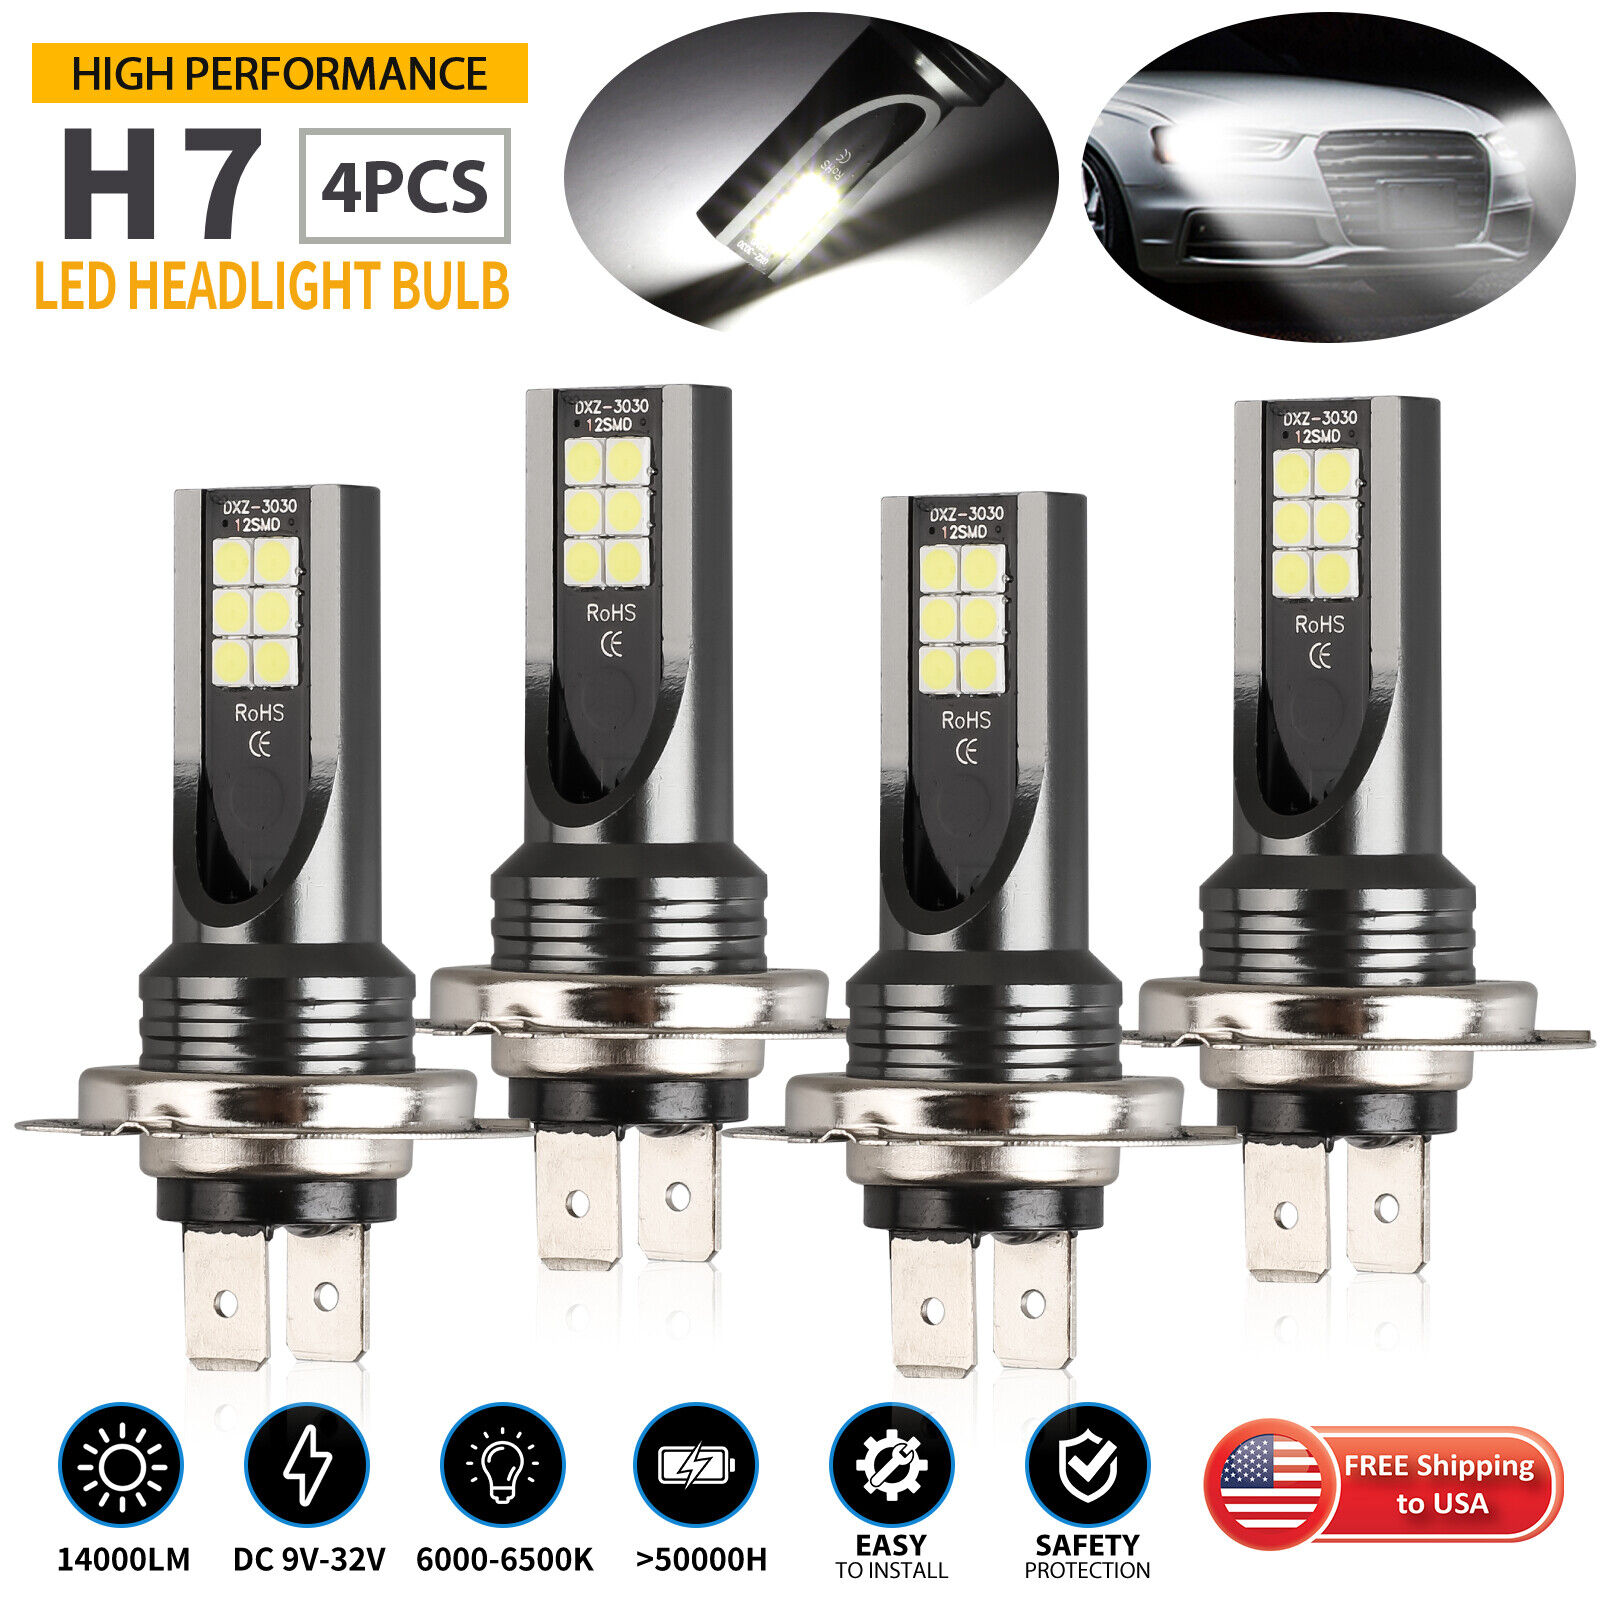 4PCS H7 LED Fog Driving Light Bulbs Conversion Kit Super Bright DRL 6000K White